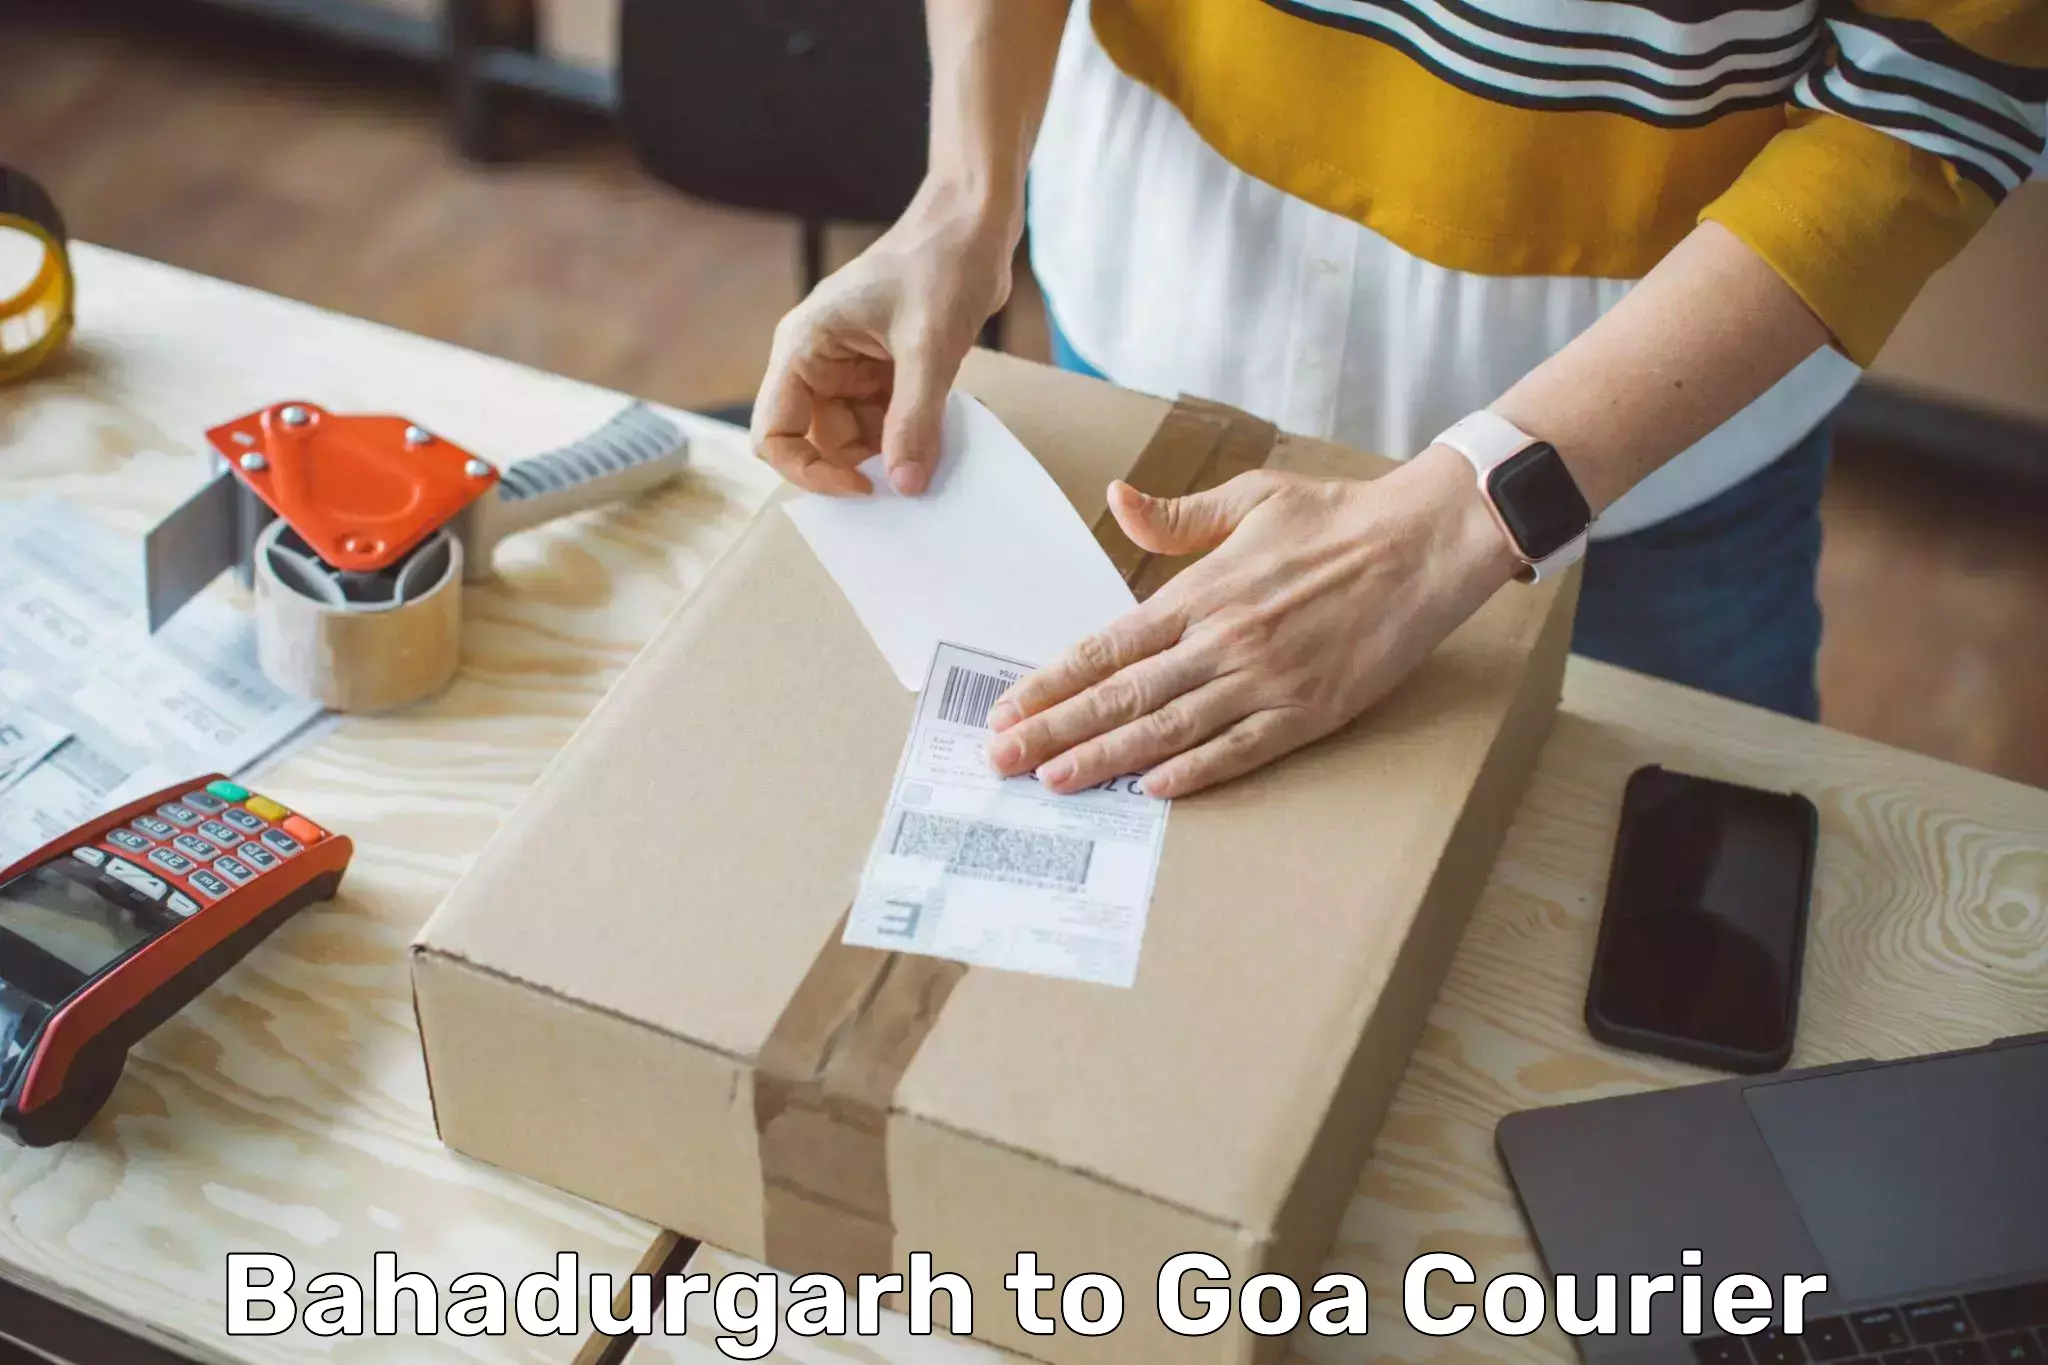 Ground shipping Bahadurgarh to Goa University